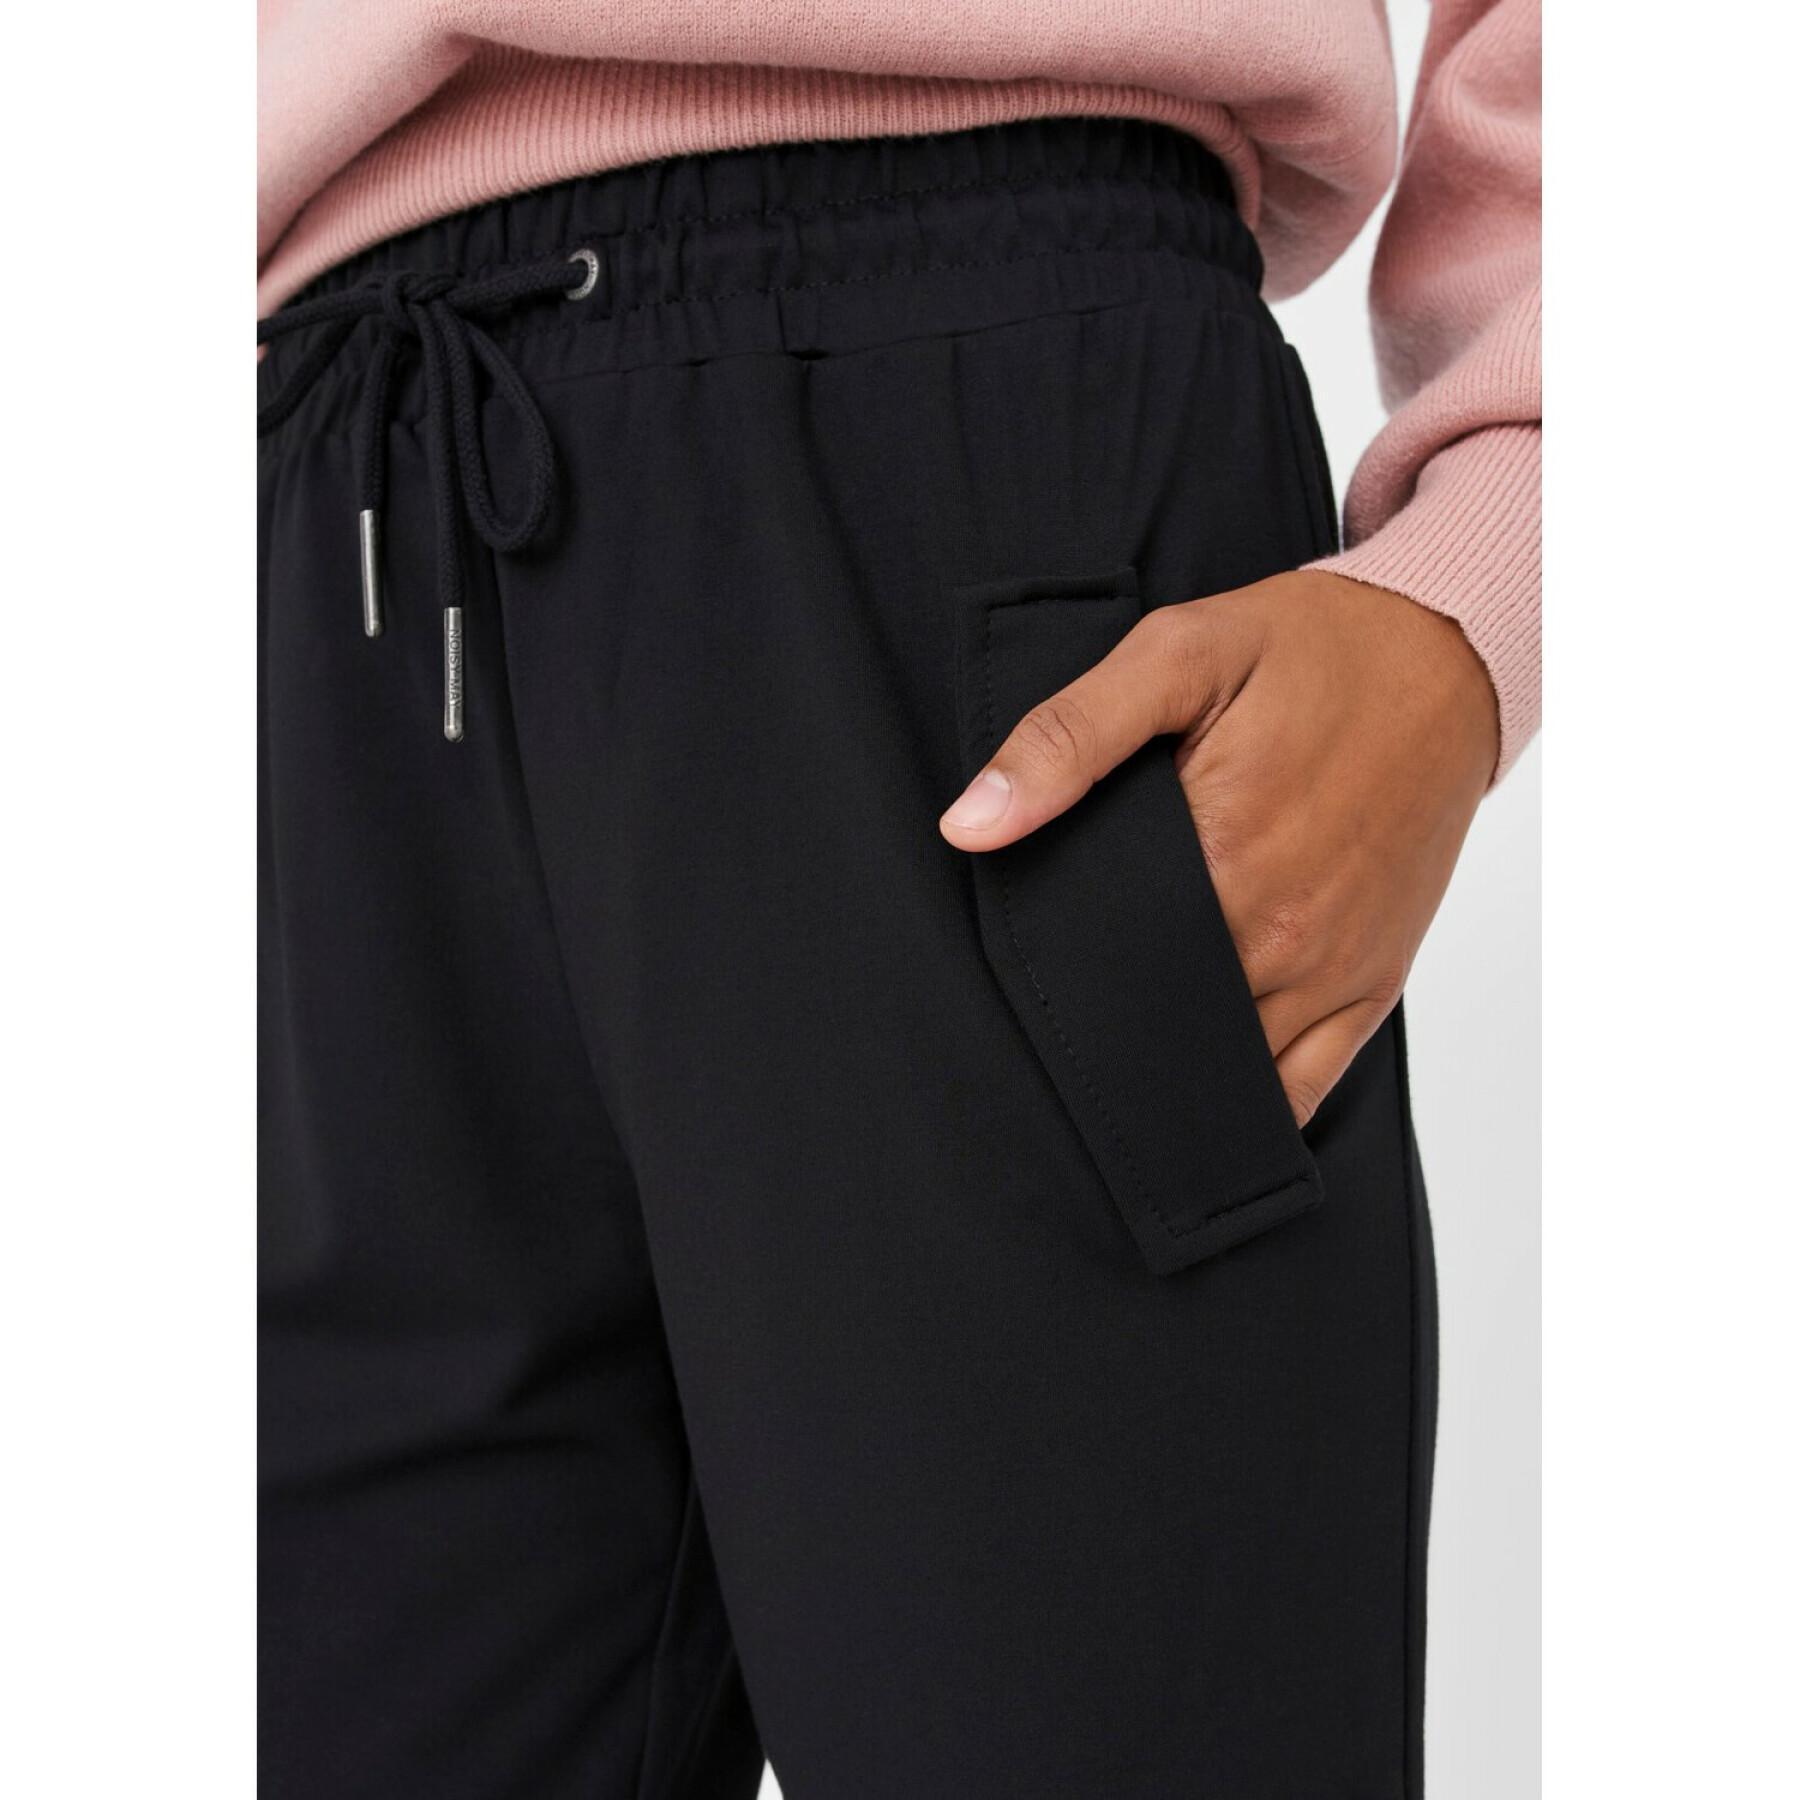 Women's trousers Noisy May nmpalma